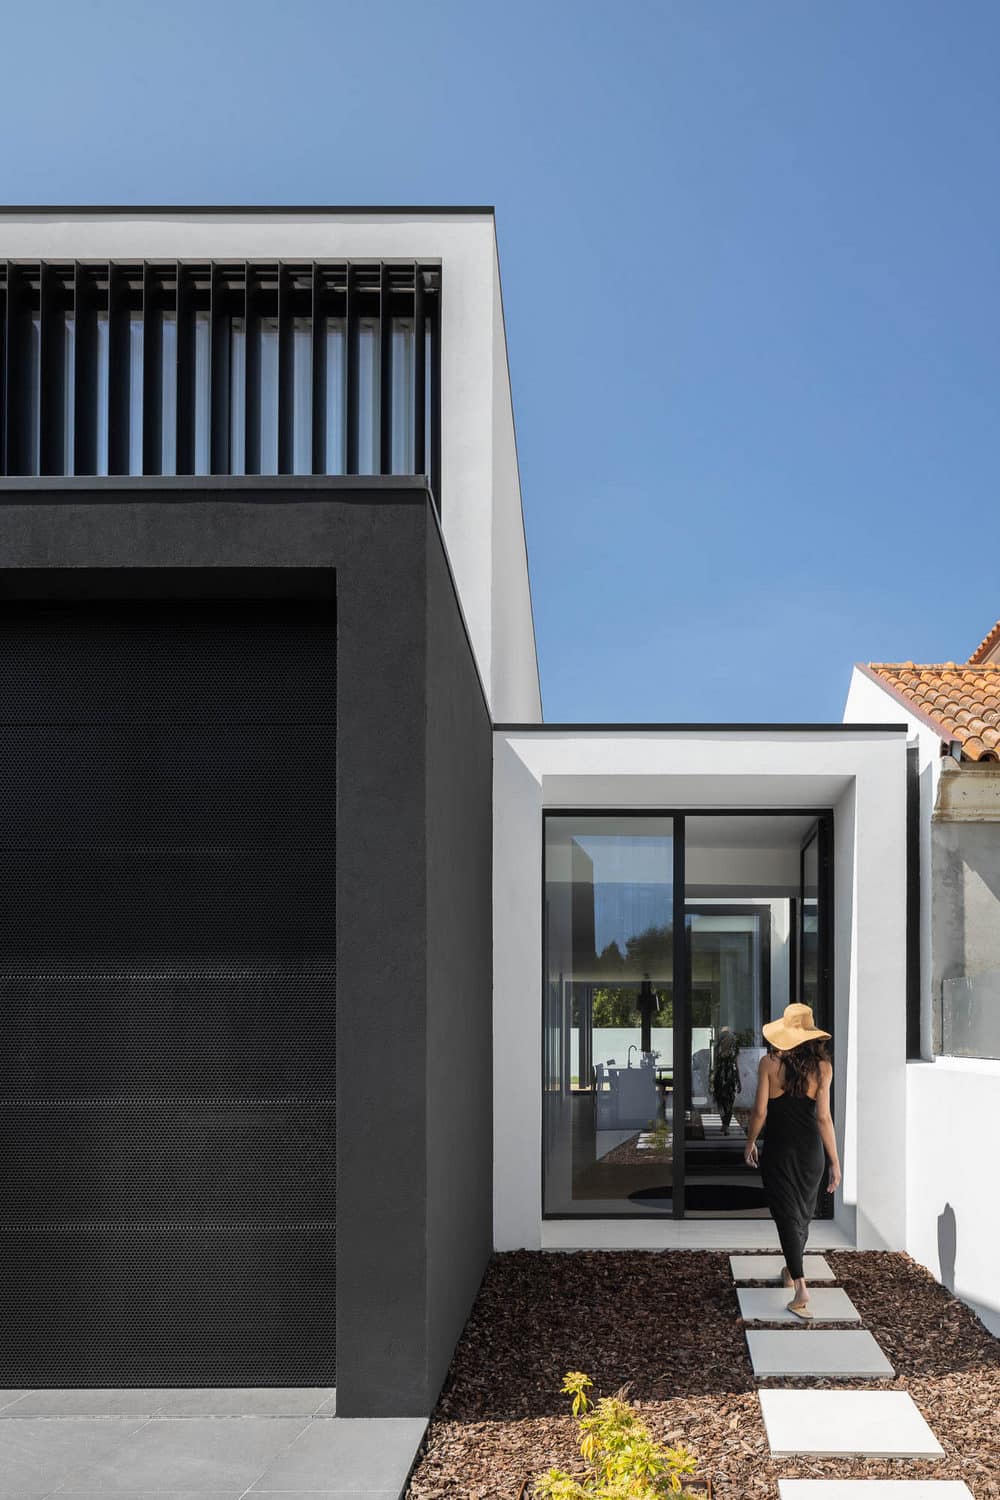 Casa Diagonal - When a Pool Enter Inside a Home